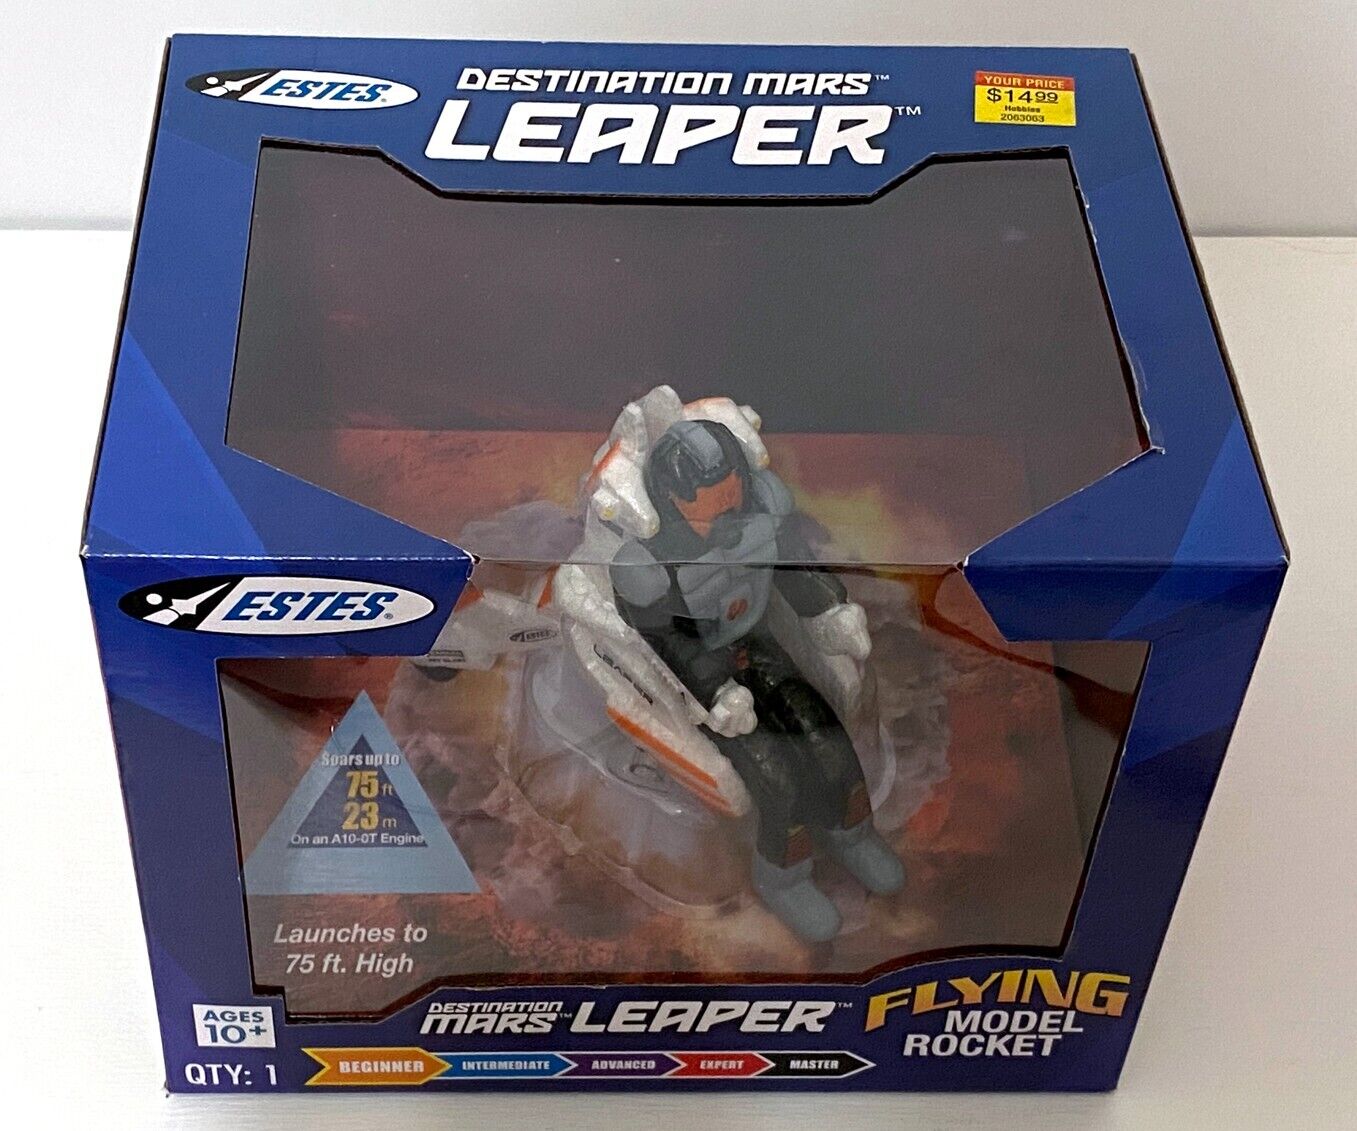 Estes Mars Leaper Rocket Kit - Beginner Level